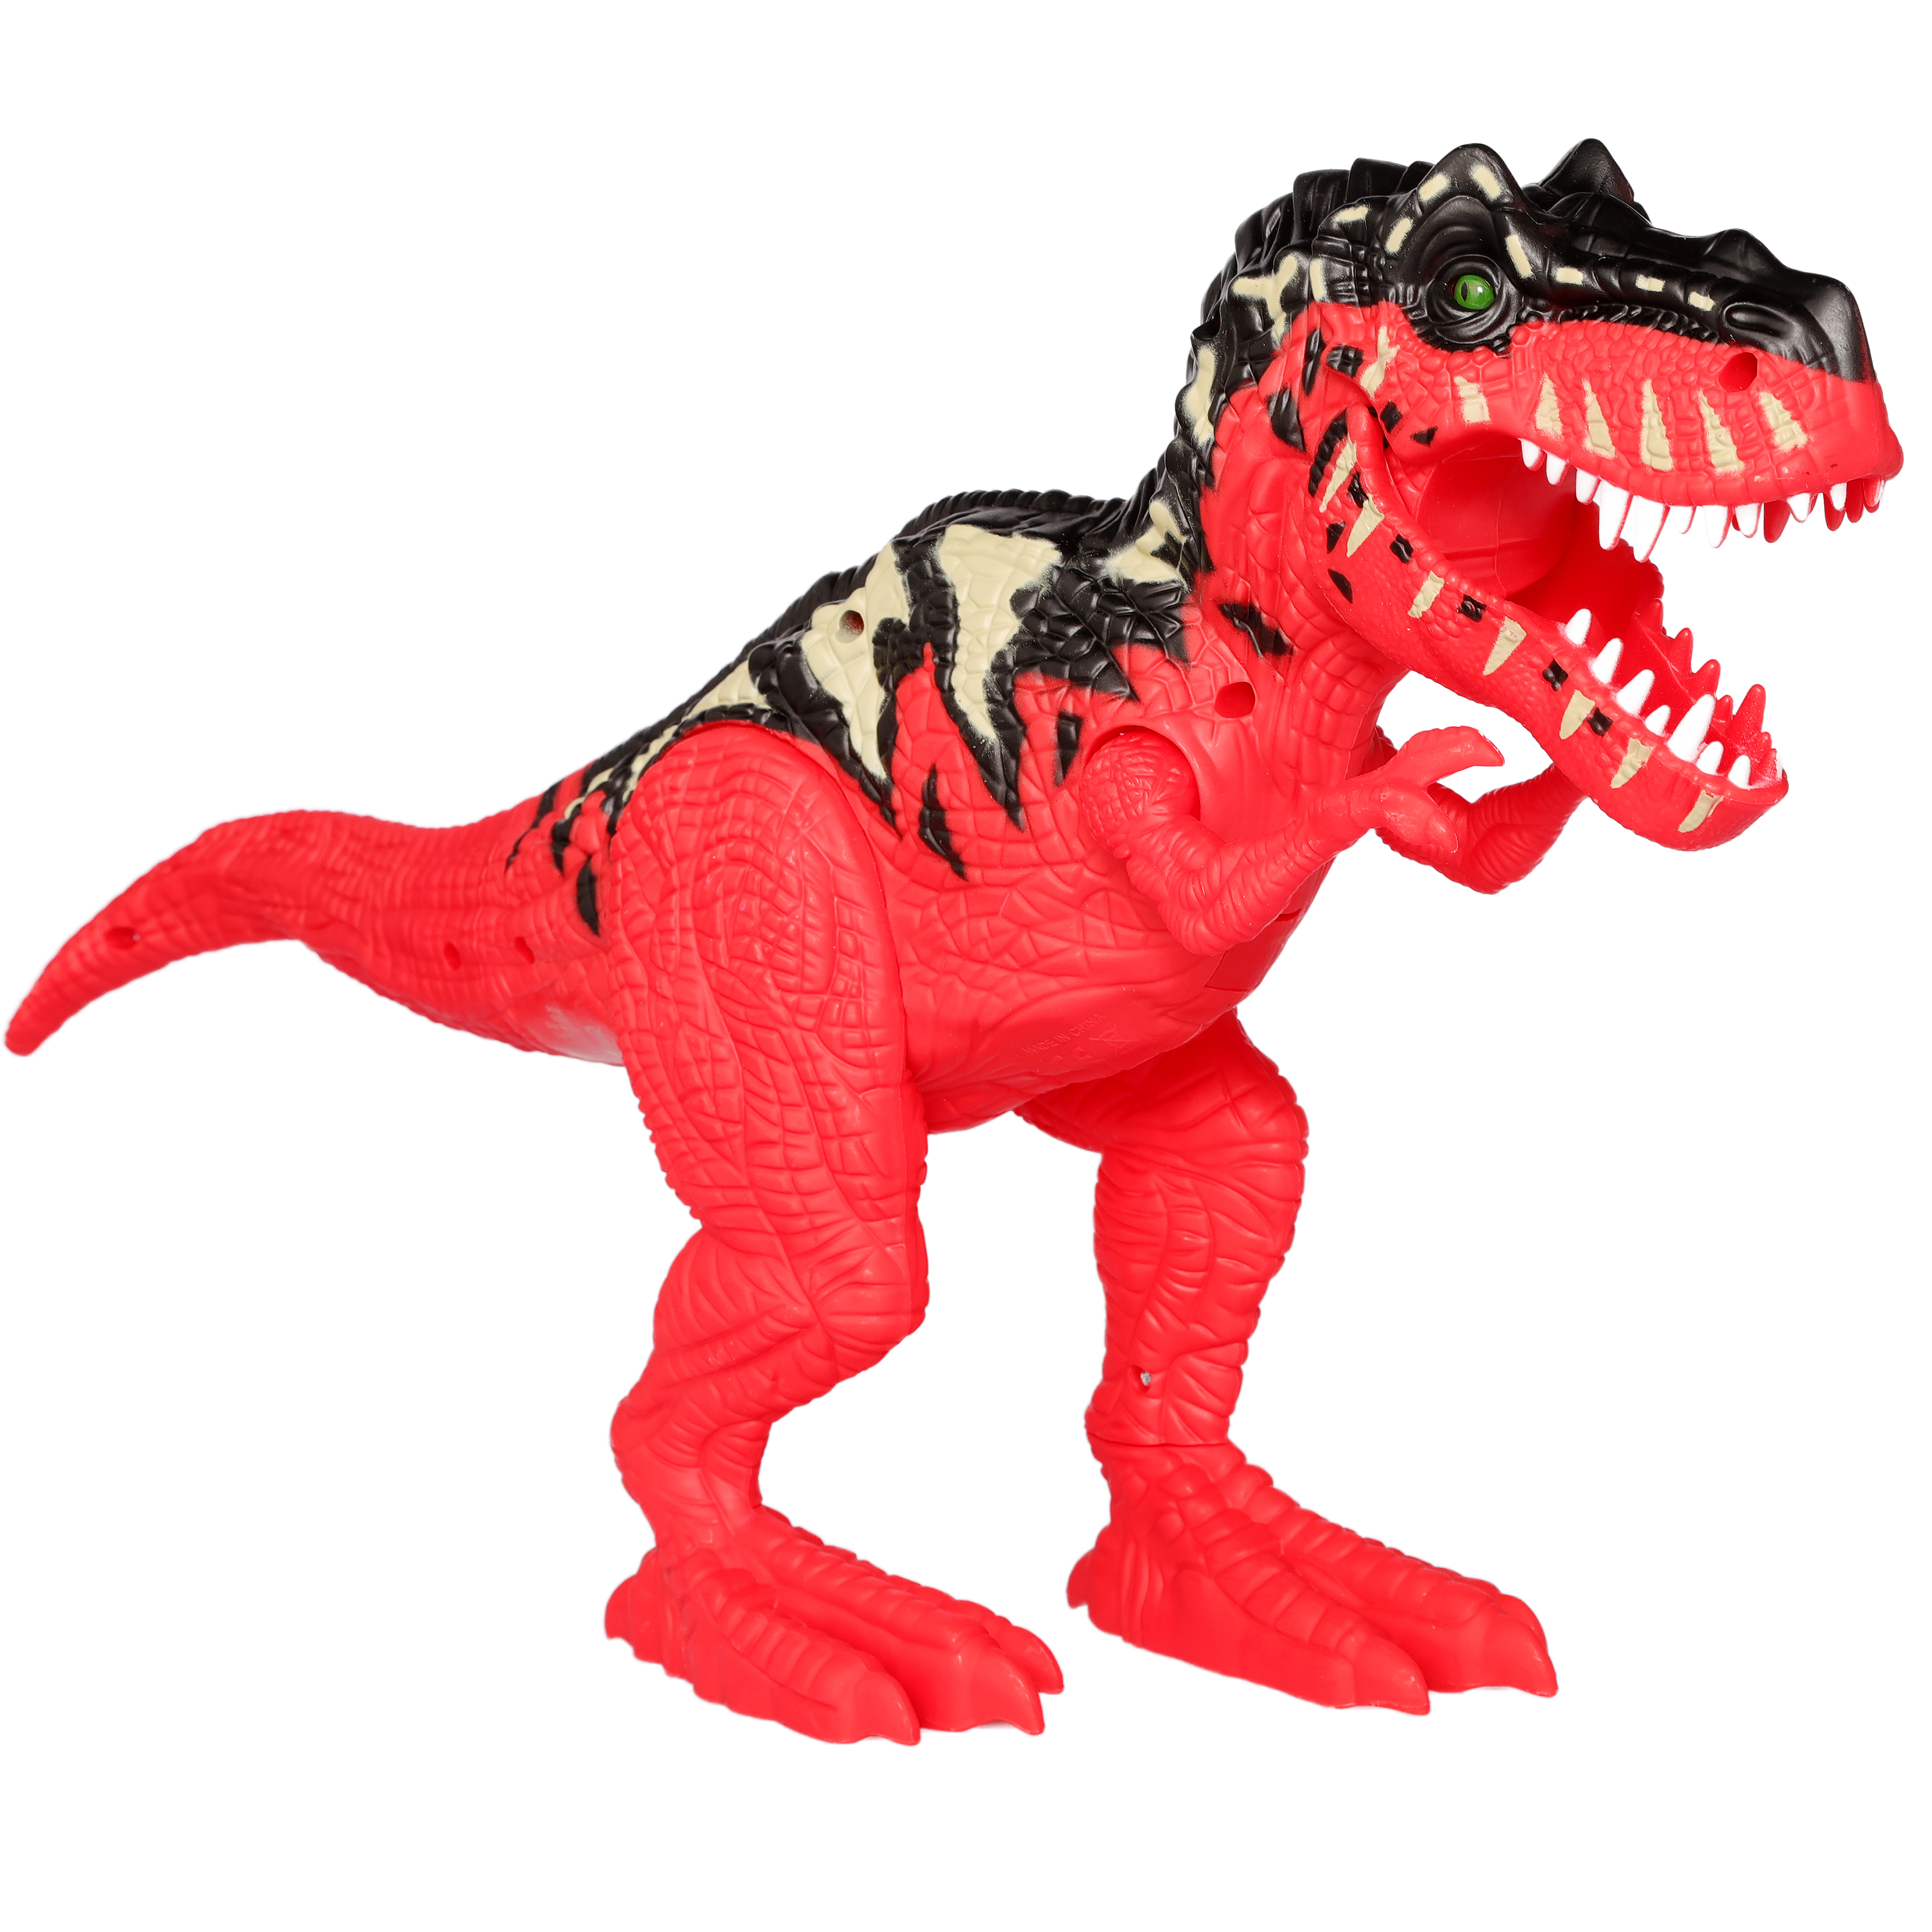 Подвижная фигурка Chap Mei динозавр Тираннозавр, 48 см, свет, звук фигурка динозавра тираннозавр на охоте